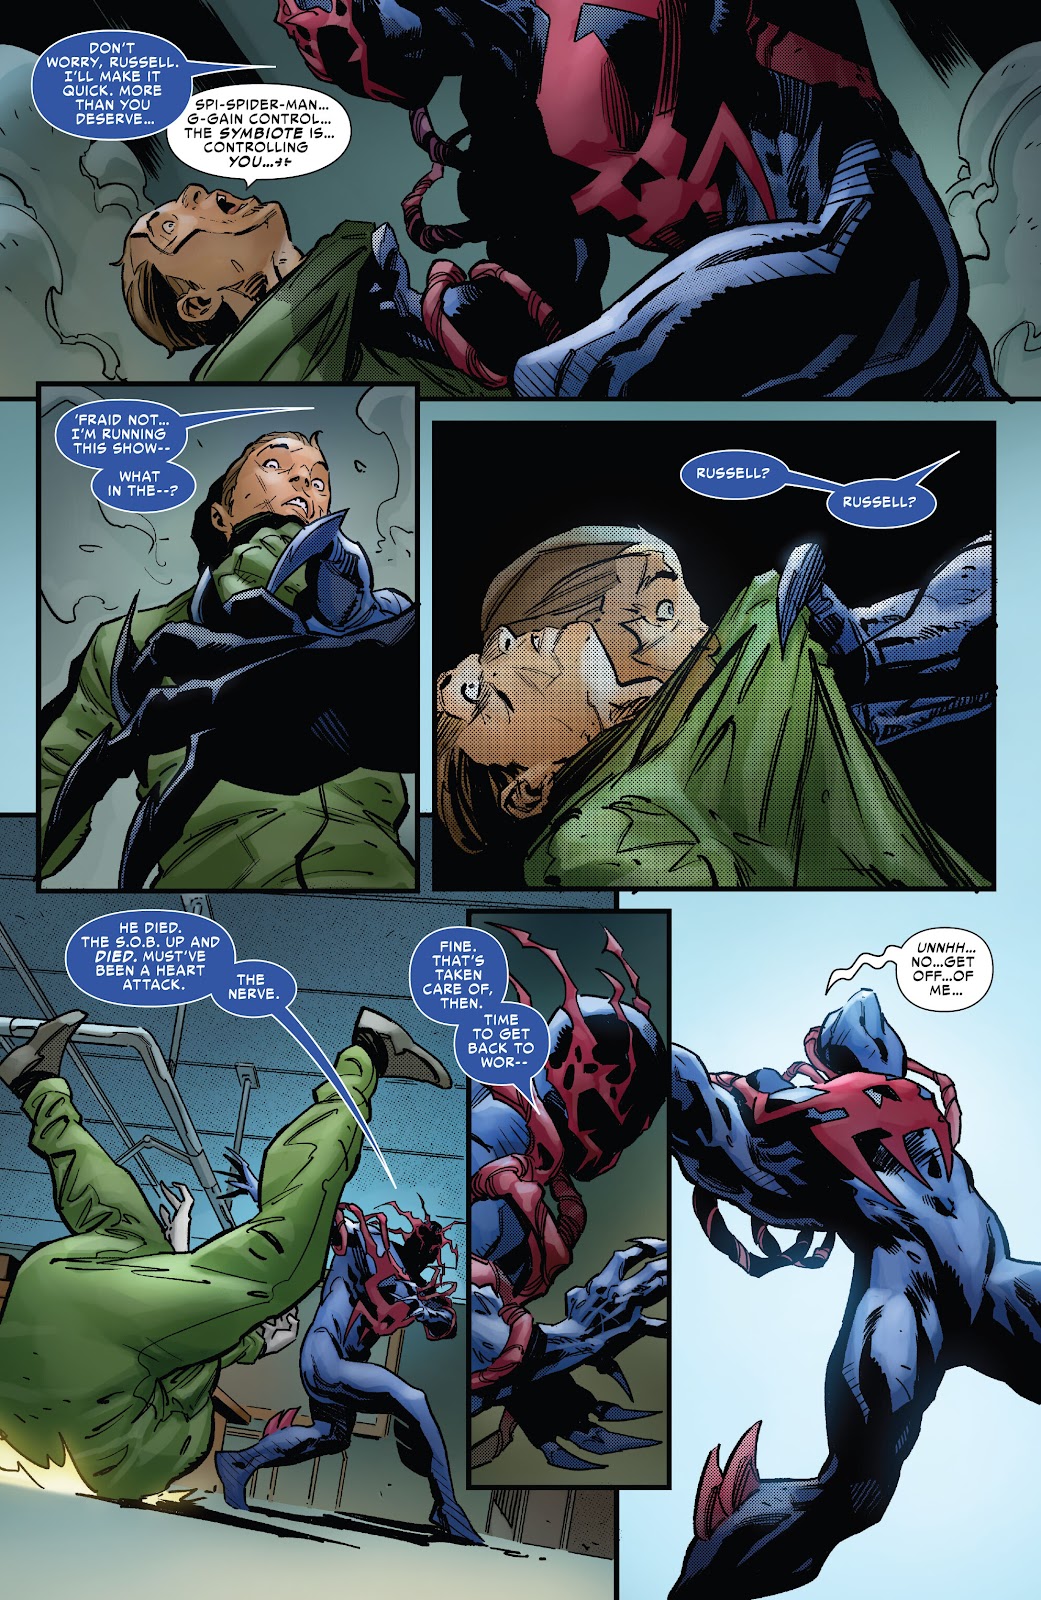 Symbiote Spider-Man 2099 issue 2 - Page 8